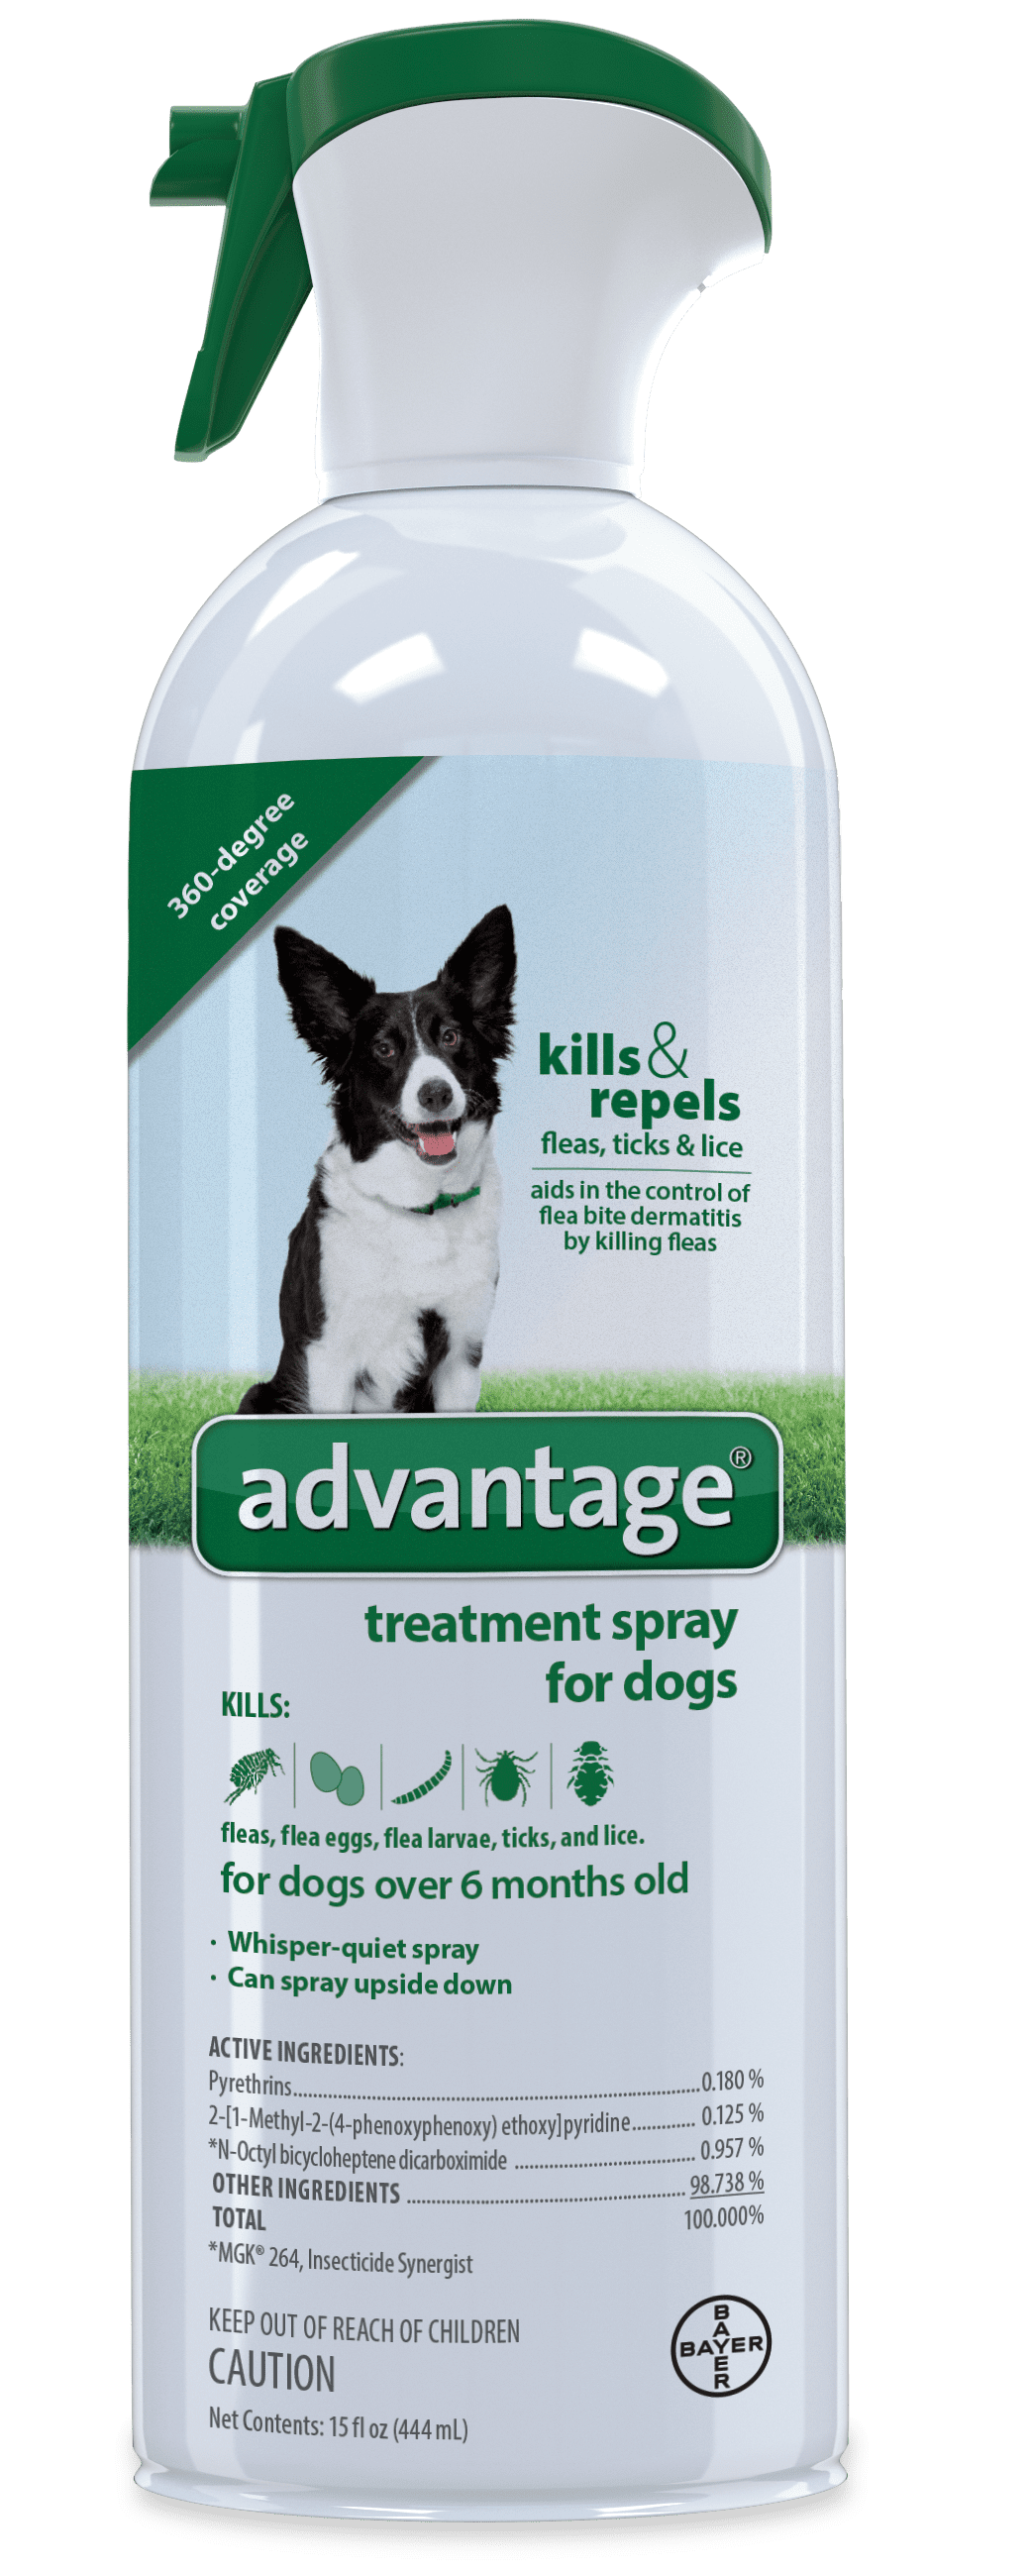 advantage flea treatment spray for cats